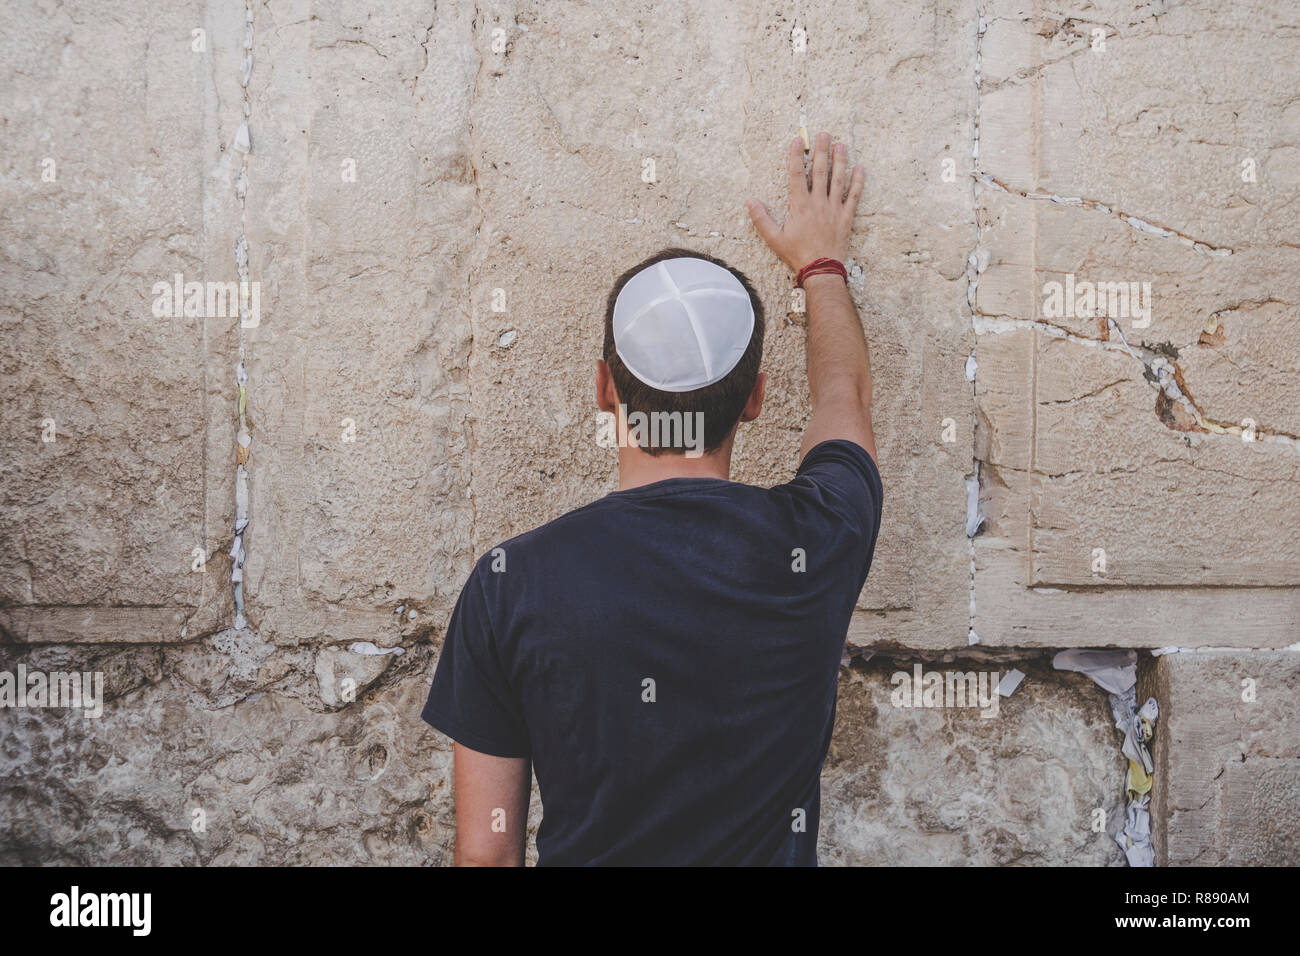 La main de l'homme et de prier sur le mur occidental, Mur des lamentations le lieu de pleurer est un ancien mur de pierre calcaire dans la vieille ville de Jérusalem. Deuxième Jewis Banque D'Images